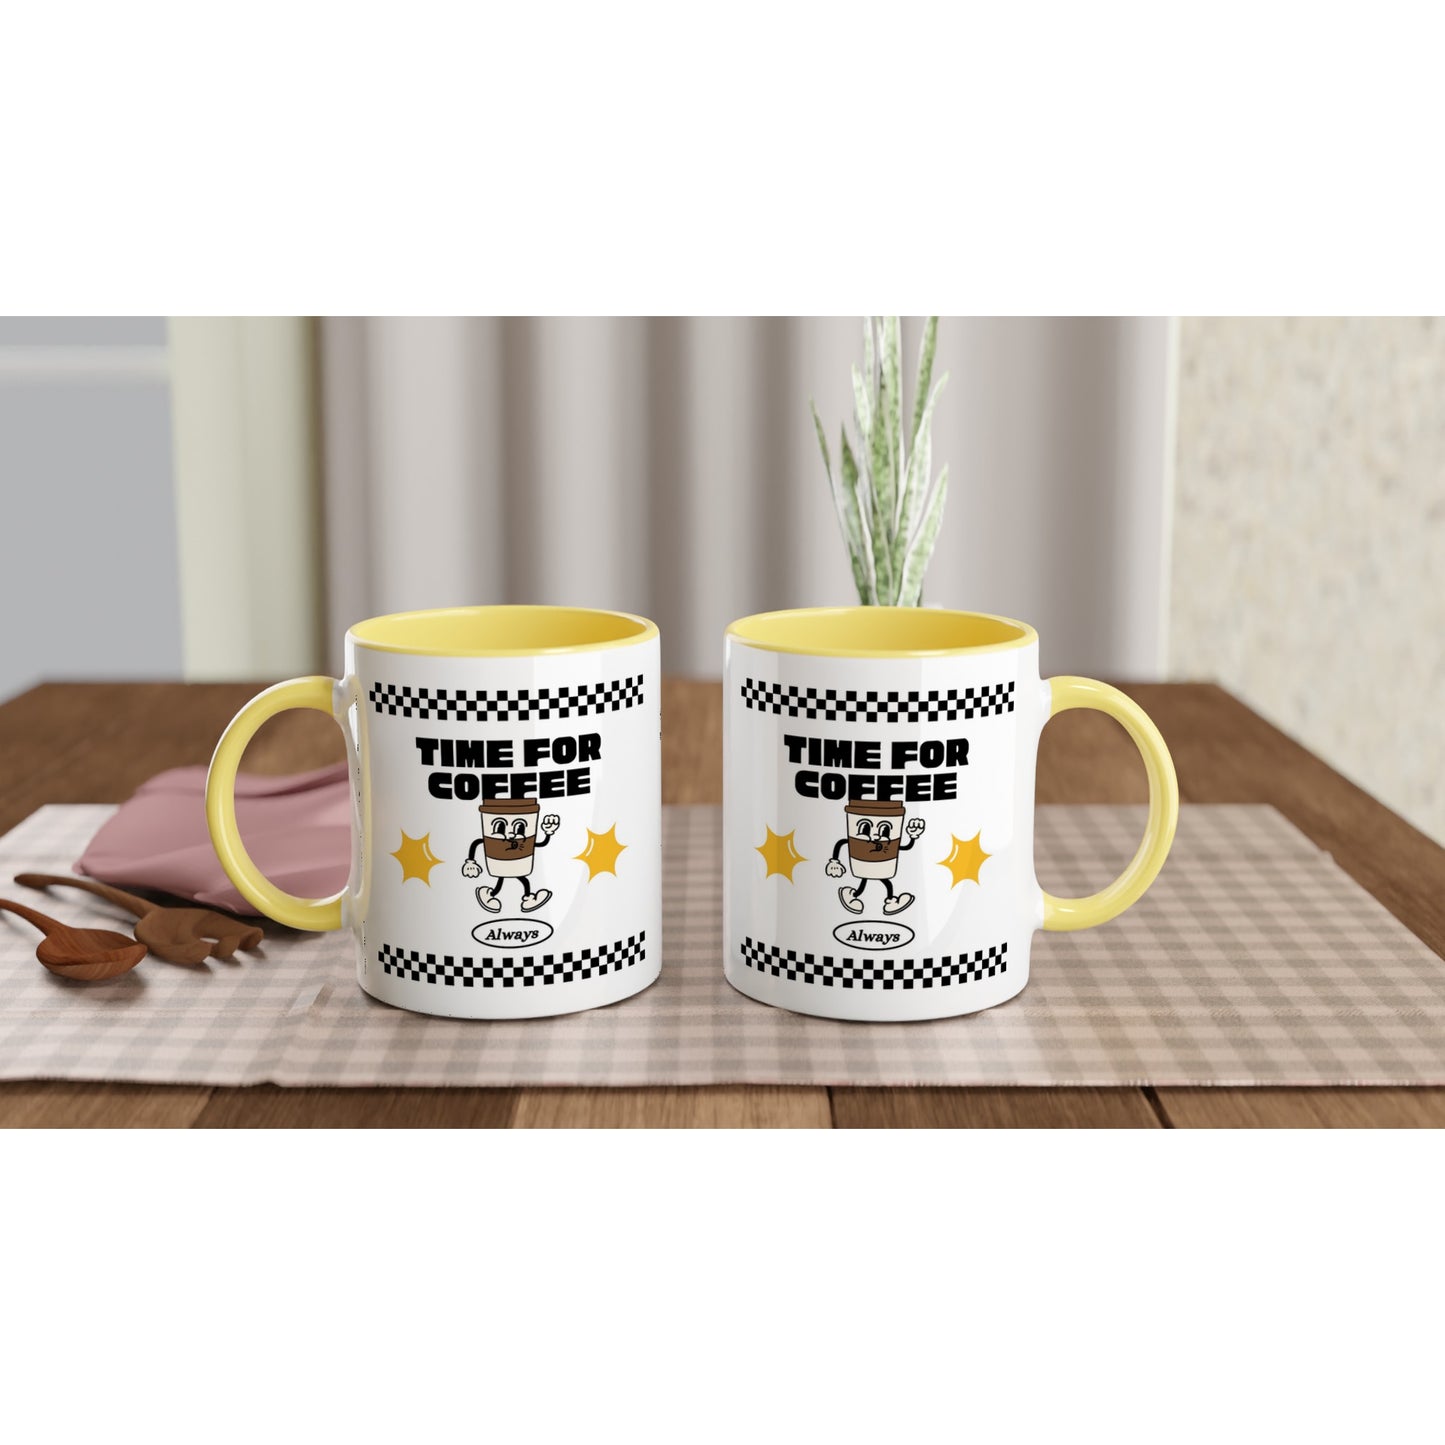 Time For Coffee, Always - White 11oz Ceramic Mug with Colour Inside Colour 11oz Mug coffee retro